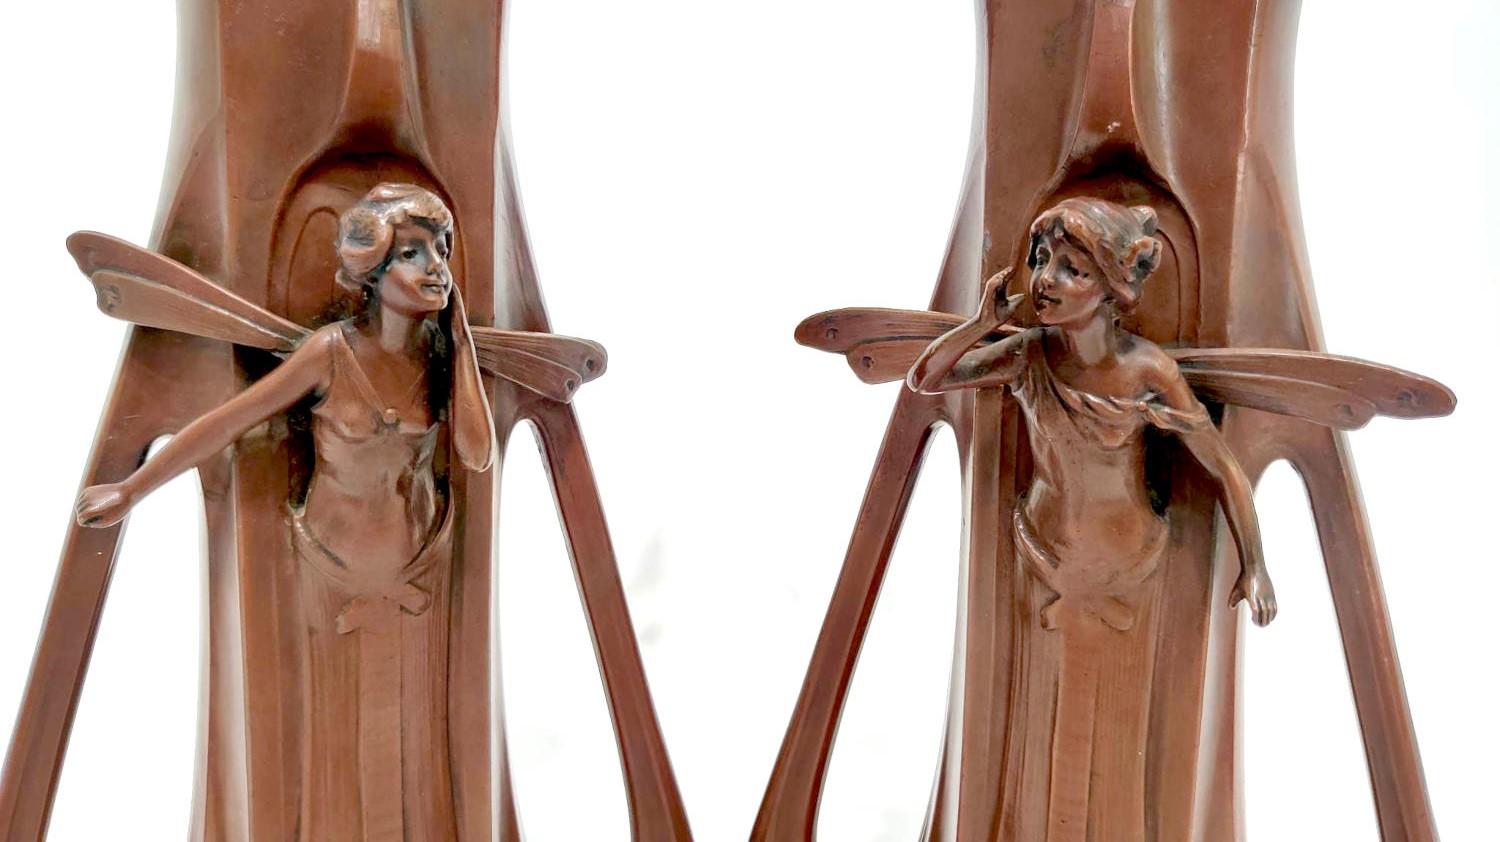 Charmante paire de vases Art nouveau représentant un couple de fées. L'une des fées appelle son partenaire, qui l'écoute depuis l'autre vase. Le dos des vases est orné d'une marguerite. Les vases présentent d'élégantes lignes et poignées art